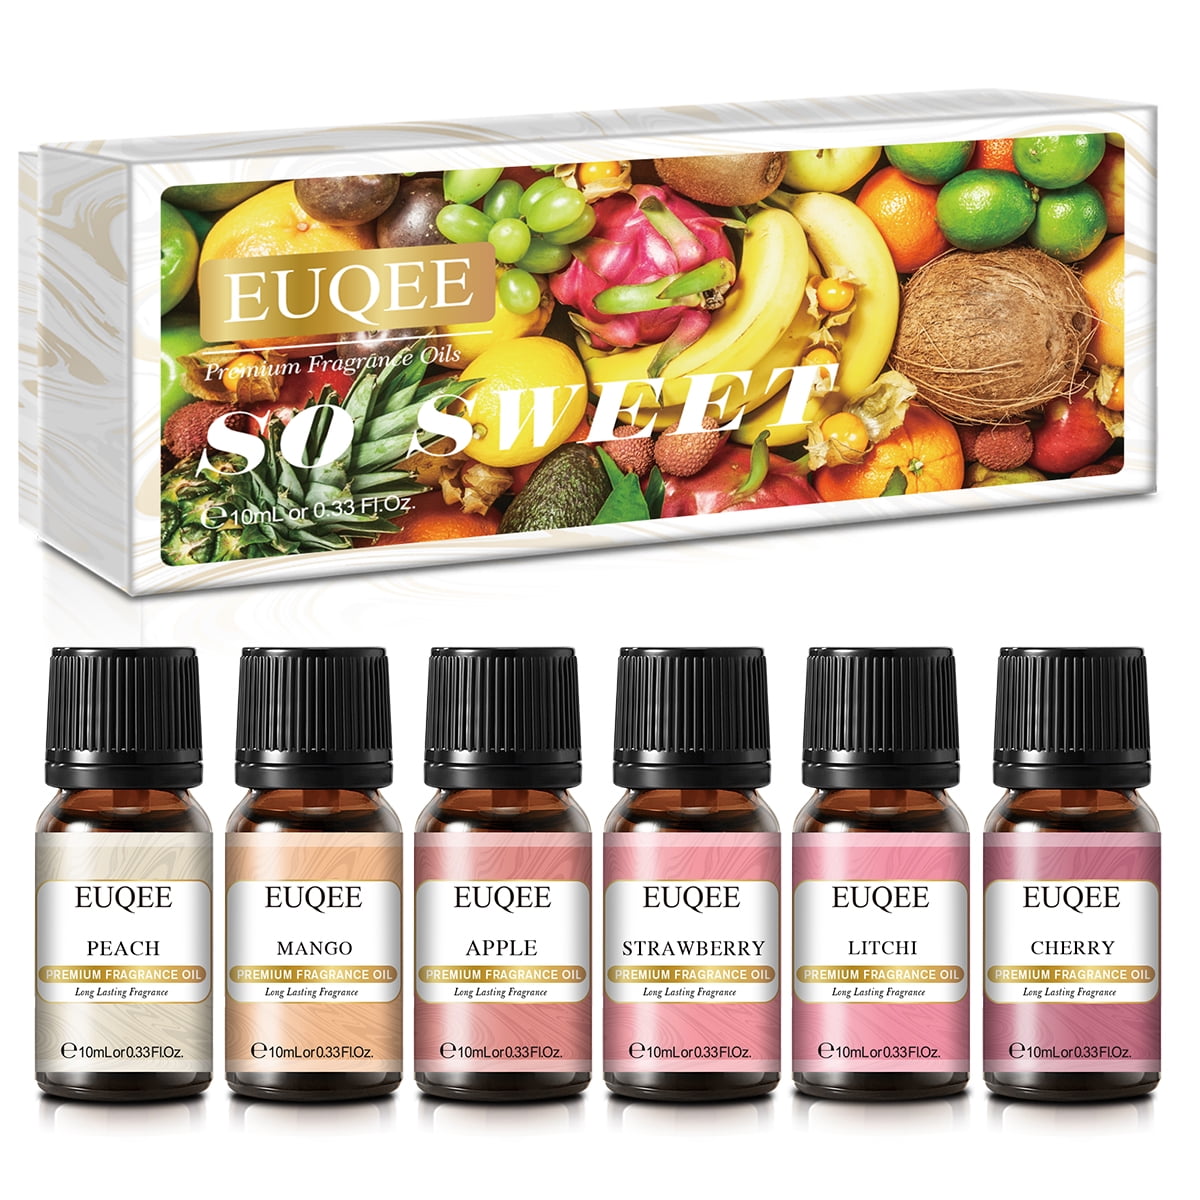 HIQILI Fragrance Oil Spice Set of 6 Premium Candle Oils, Cinnamon, Apple  Cider, Pumpkin, Vanilla, Harvest Spice, Fall Leaf